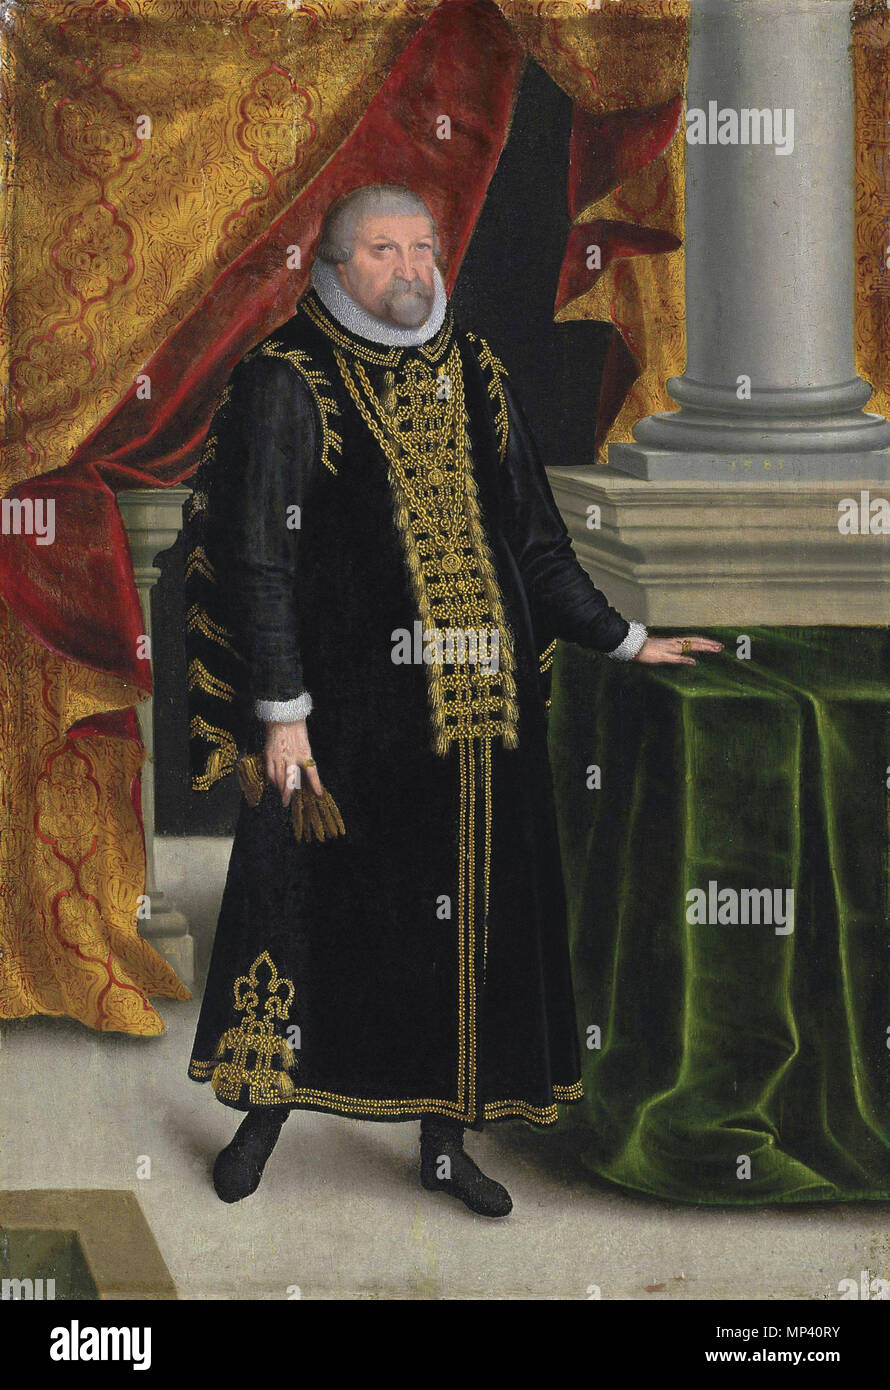 Johan Georges, príncipe elector de Brandeburgo (1525-1598) *aceite en el panel *28,9 x 19,7 cm *firma b.l.: ZW *fecha c.r.: 1585 . Inglés: Johan Georges, príncipe elector de Brandeburgo (1525-1598) aceite en panel de 28,9 x 19,7 cm firmado b.l.: ZW fecha c.r.: 1585 . 1585. Zacharias Wehme (-1606) Nombres alternativos Zacharias Vehm, Zacarías, Zacarías Wehm Wehem Descripción pintor alemán y el iluminador Hijo de corte sajona y carpintero Hans Wehme gunsmith. Trabajó principalmente como iluminador y retratista de los príncipes electores y duques de Sajonia. Fecha de nacimiento/muerte circa 1550 o circa 1558 6 de enero de 1606 L Foto de stock